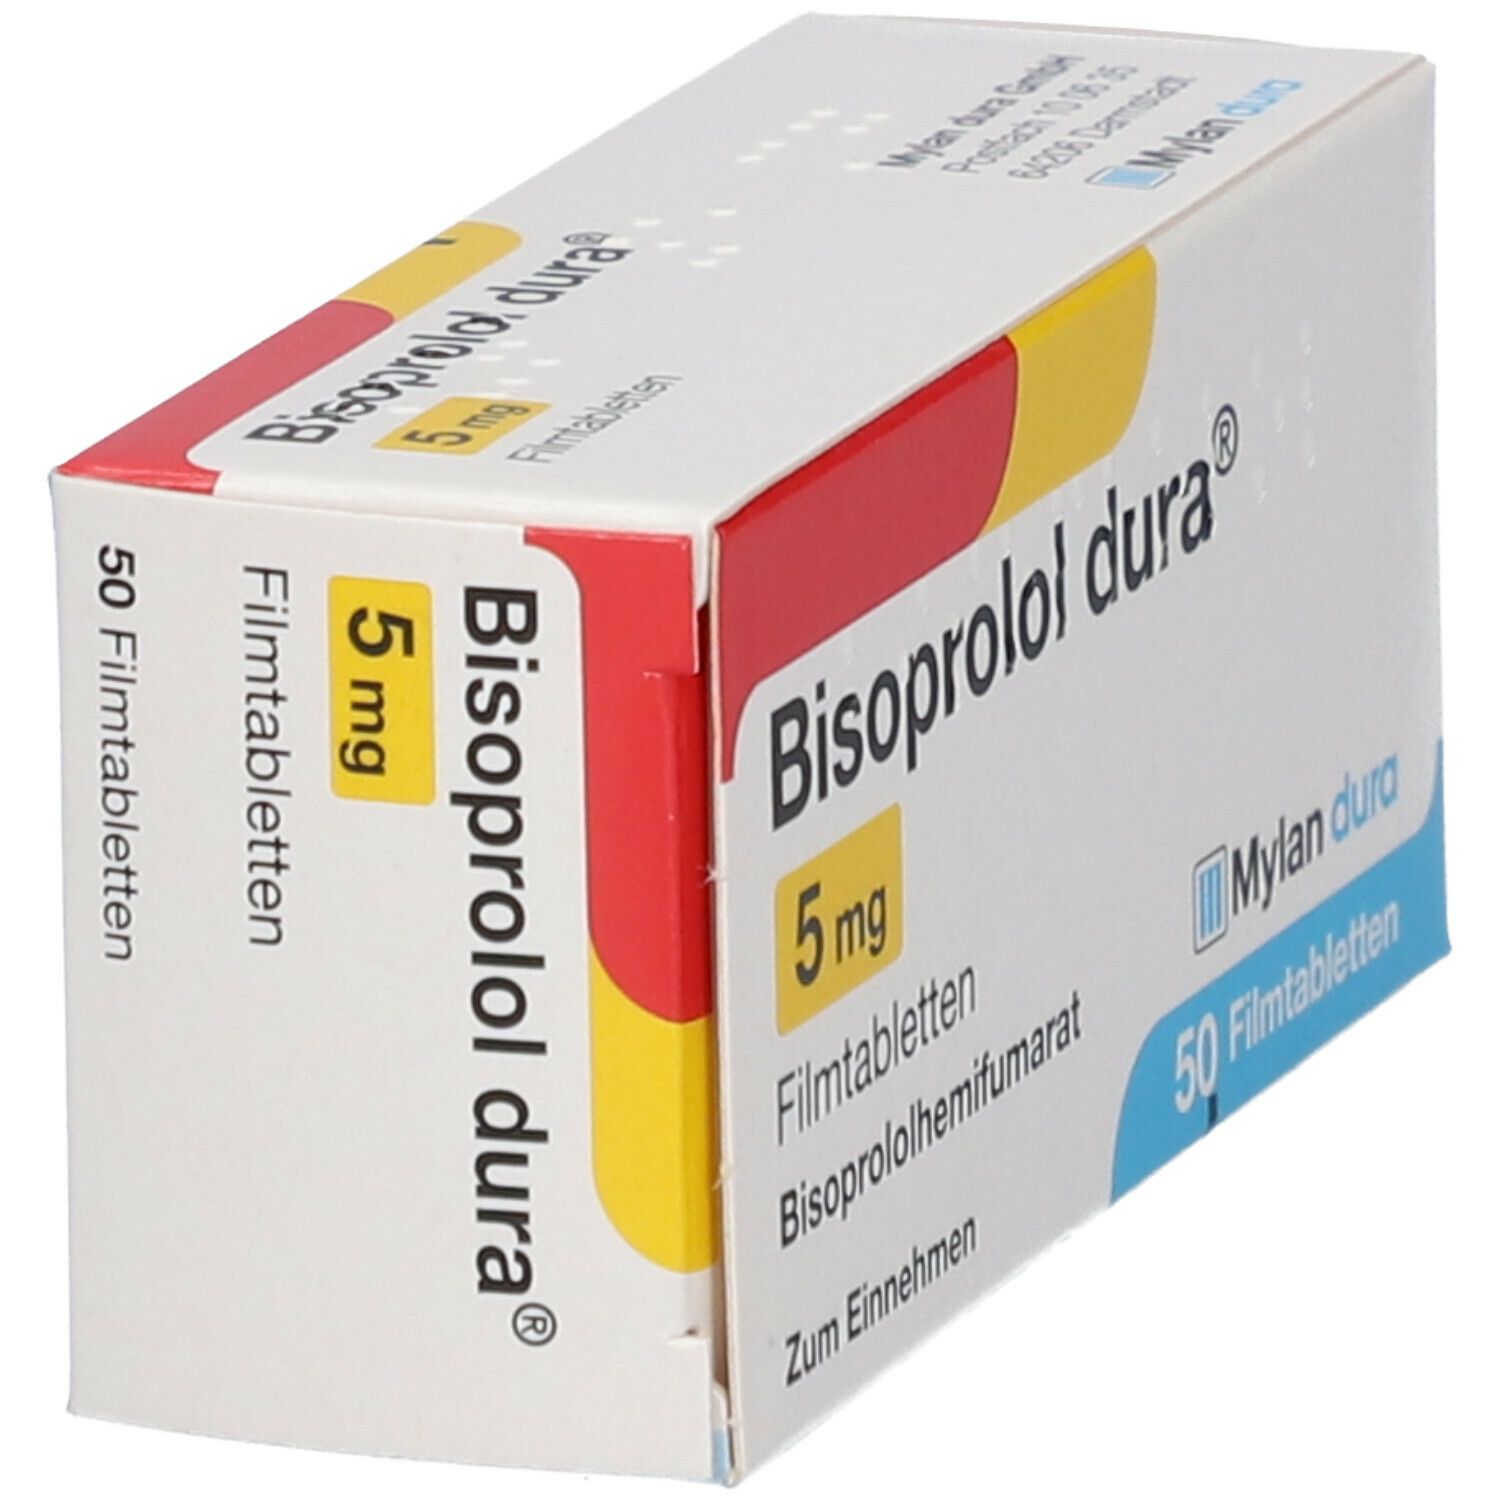 Bisoprolol dura® 5 mg